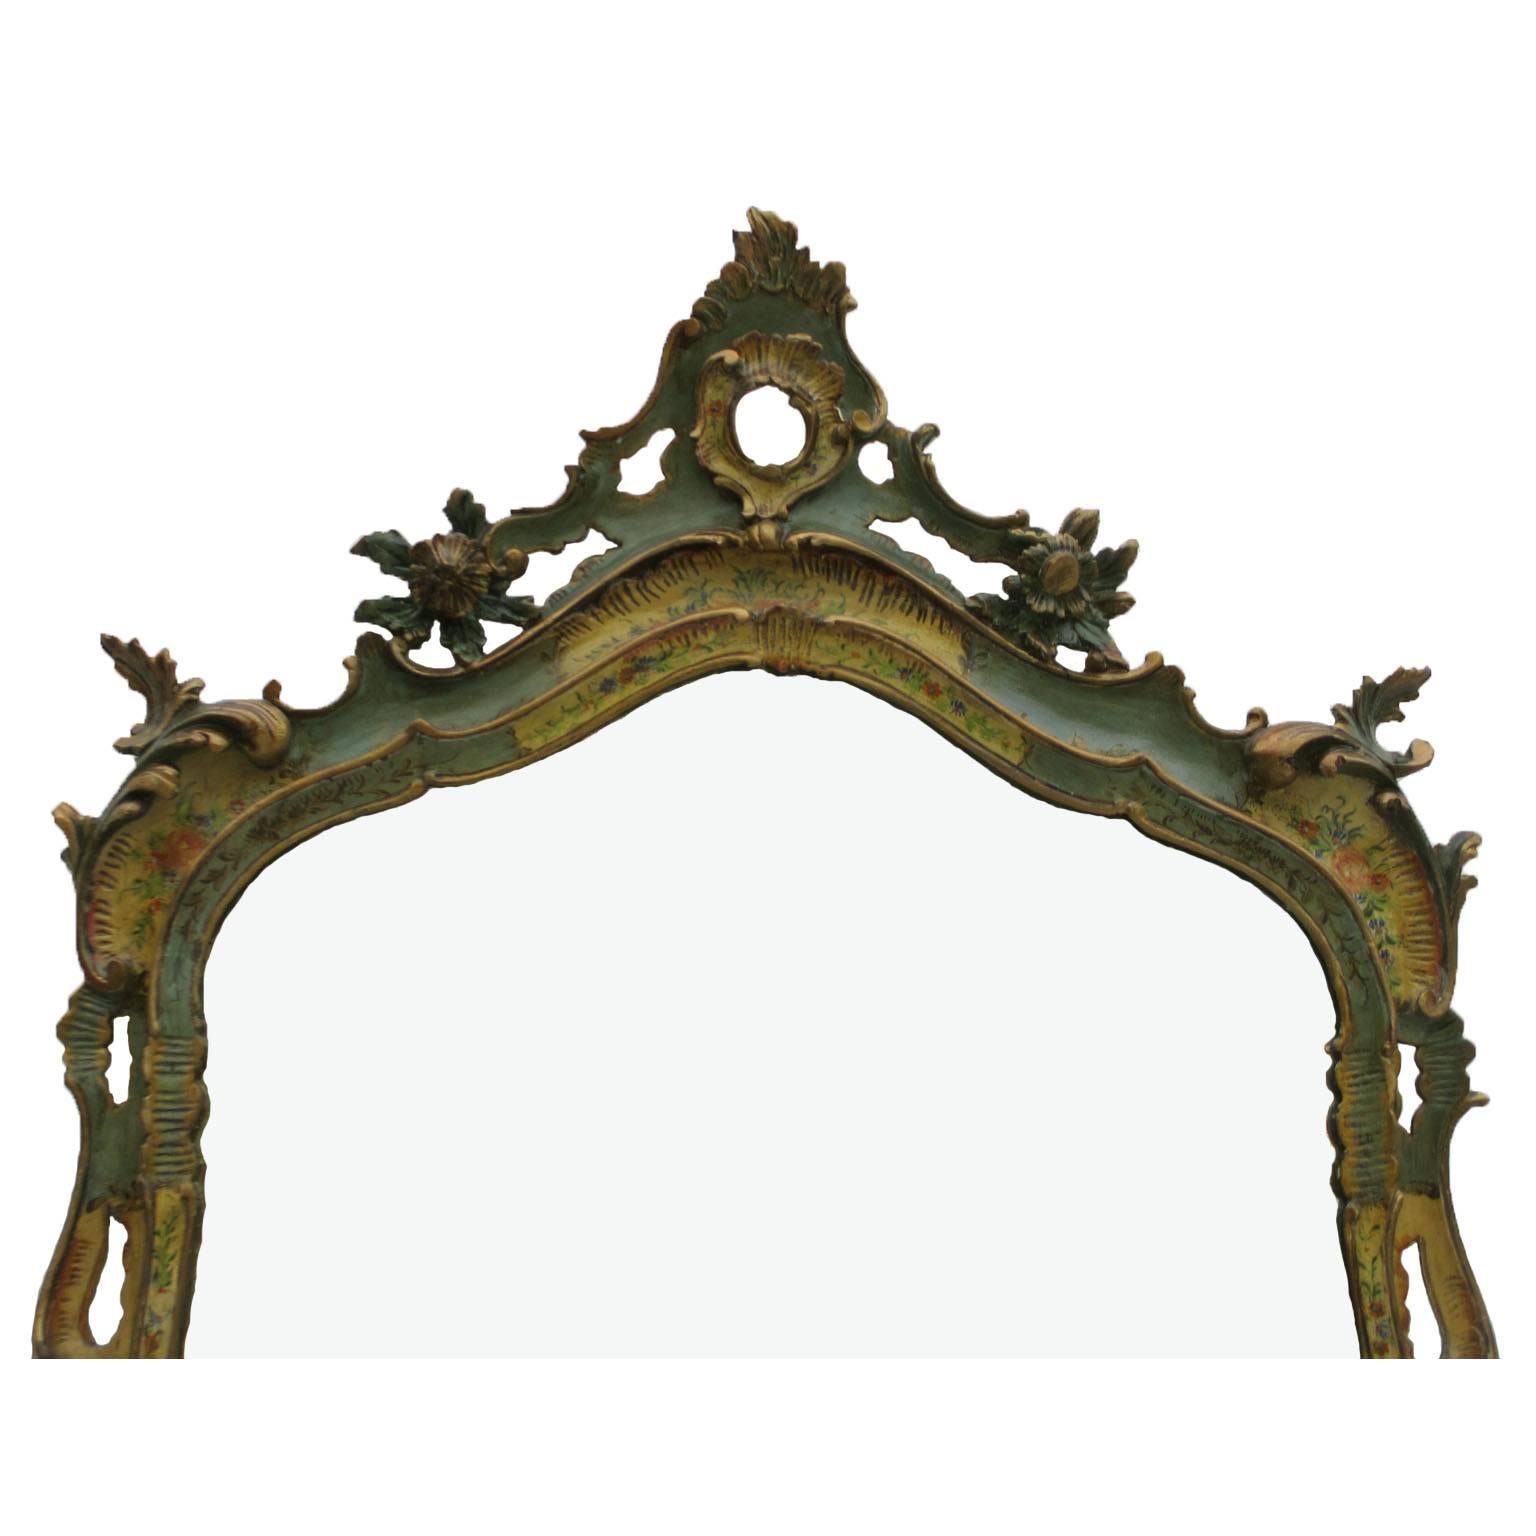 Eine seltene italienische Konsole und ein Spiegel aus geschnitztem Holz, 19.-20. Jahrhundert, polychrom bemalt und floral verziert, die Konsole in Serpentinenform, verziert mit paketvergoldeten und bunten Blumenbouquets auf grünem und